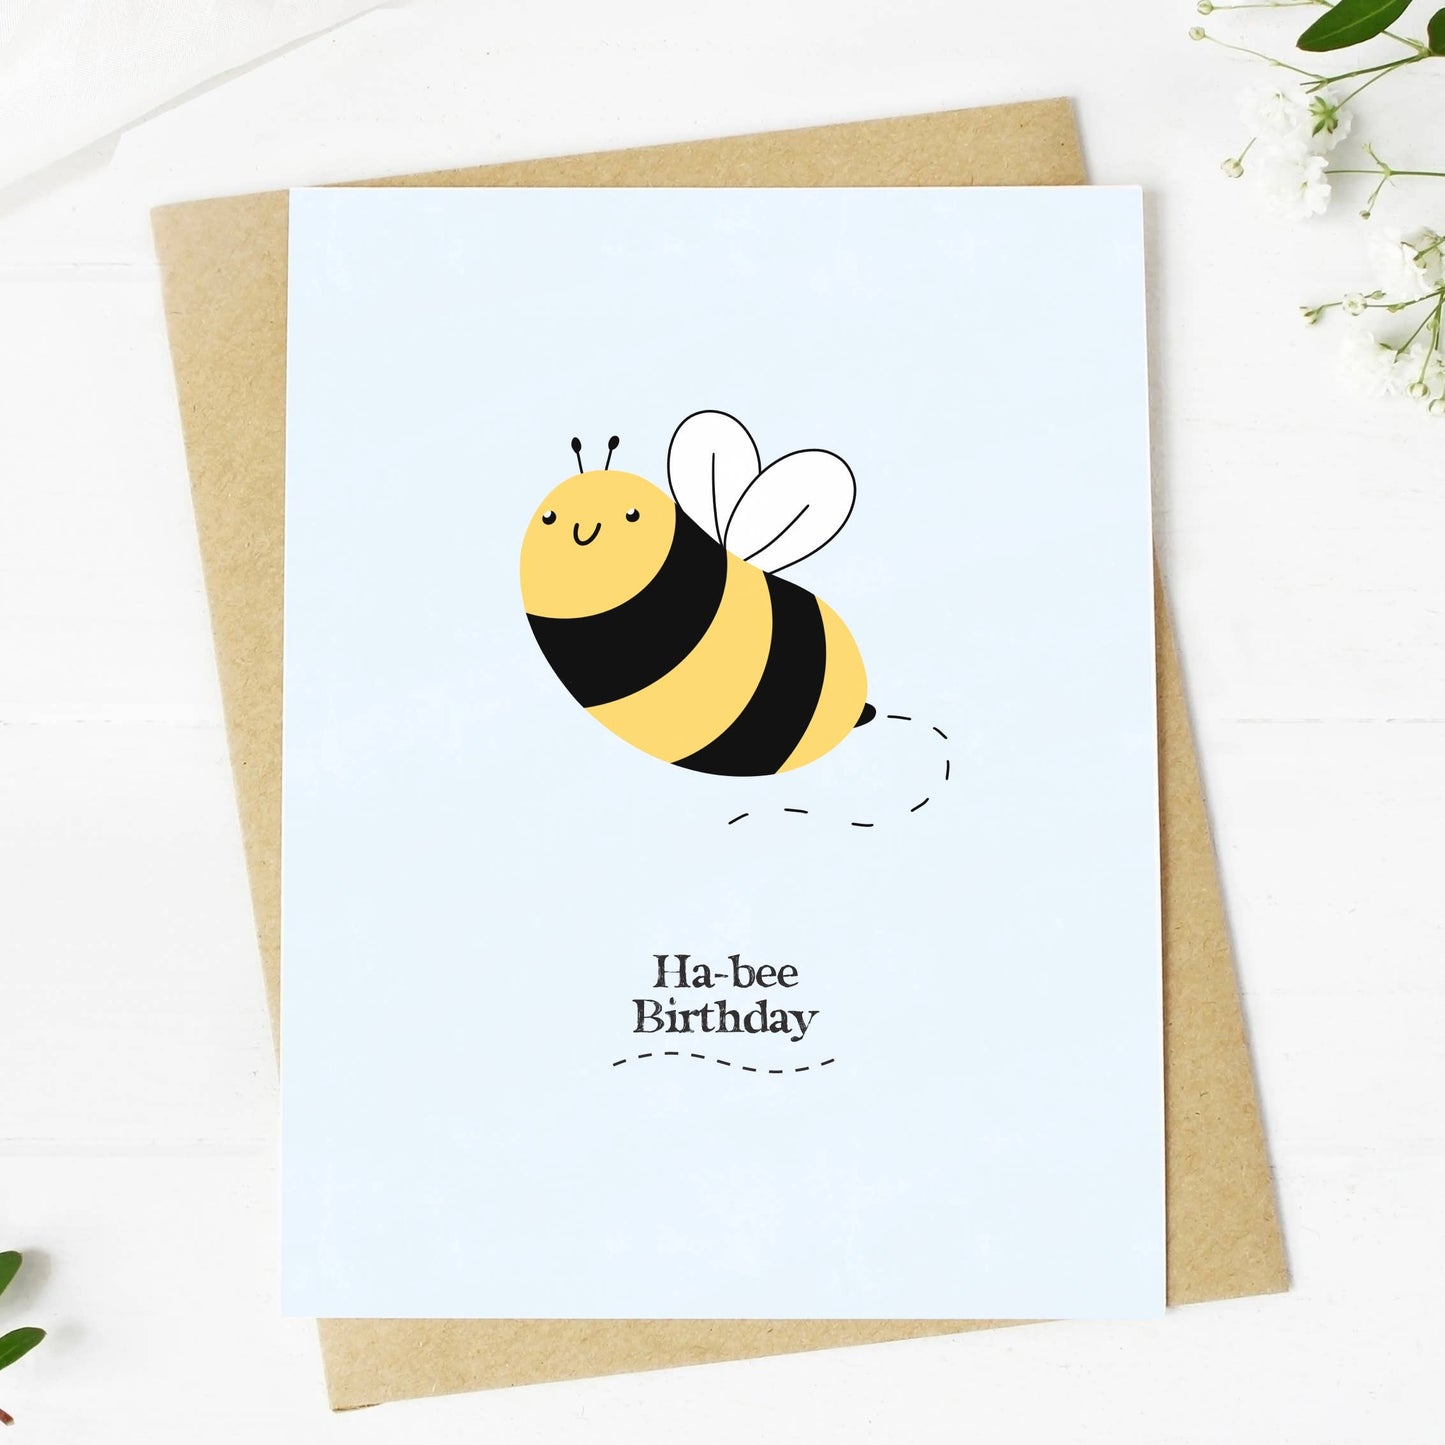 Big Moods - "Ha-Bee Birthday" Greeting Card